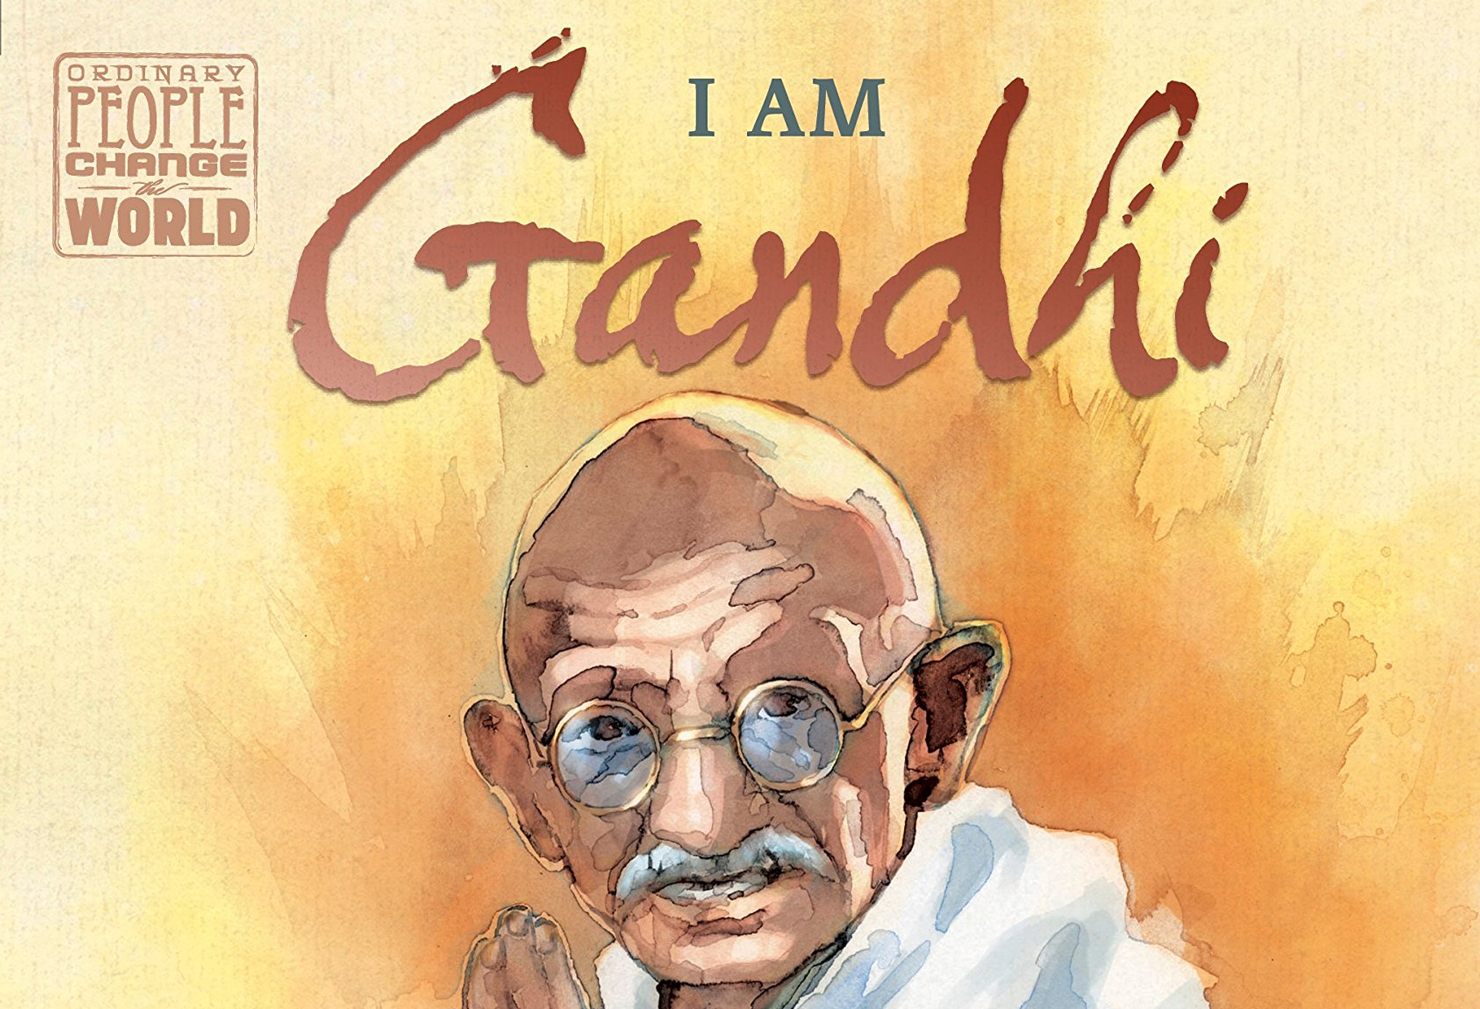 I am Gandhi by Brad Meltzer